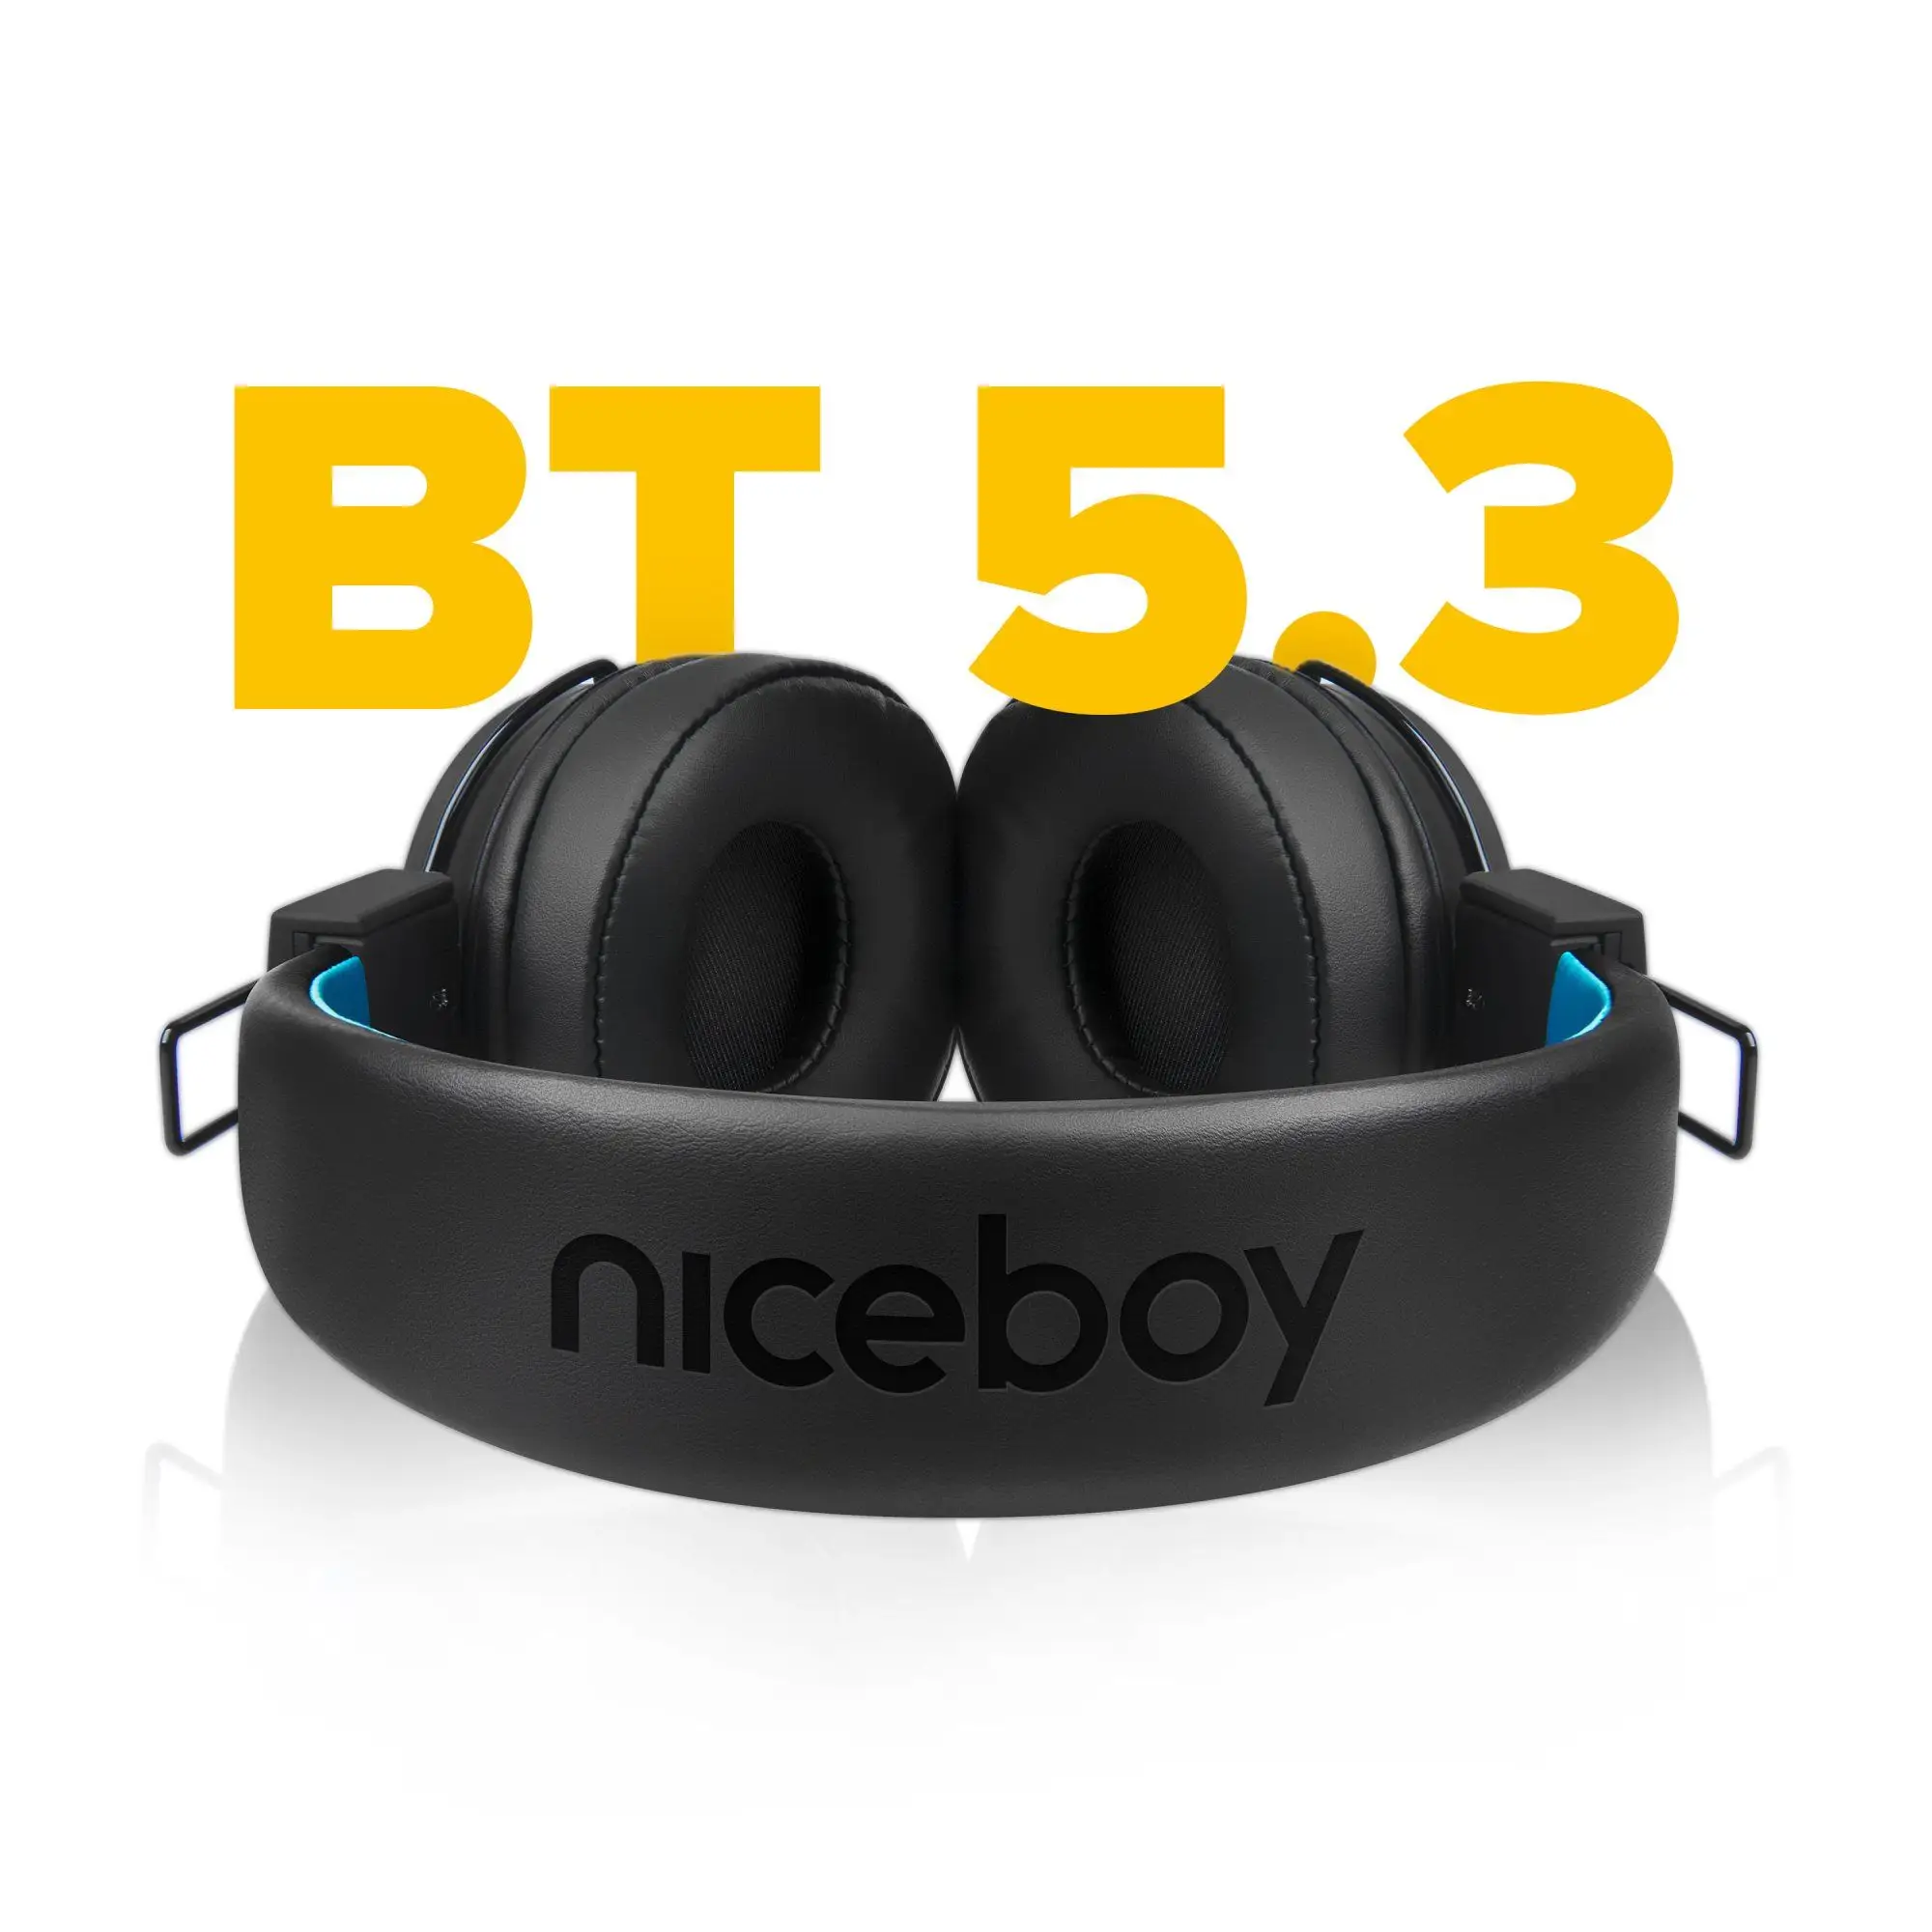  Bluetooth fejhallgató niceboy hive joy 3 kihangosító mikrofon app ion kiegyenlítő nagyszerű hangzás hosszú akkumulátor élettartam hangvezérlés könnyű kialakítás 